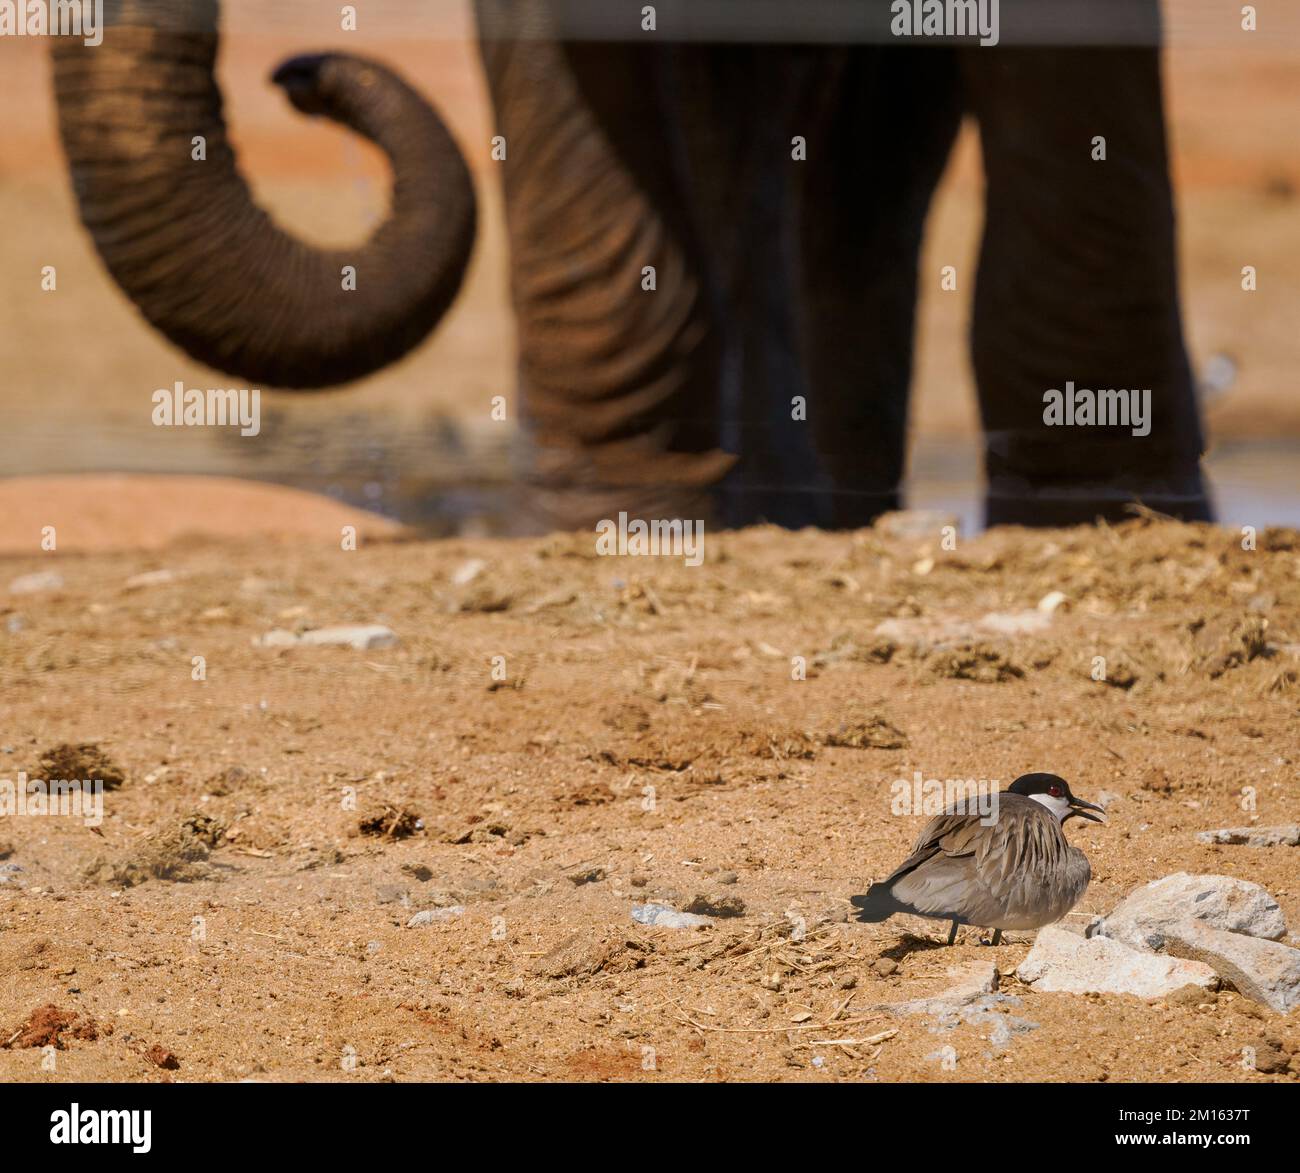 Plover Vanella spinosus con ali dritte al suo precario nido da un'affollata buca d'acqua visitata da elefanti e altri animali - Parco Nazionale dello Tsavo Kenya Foto Stock